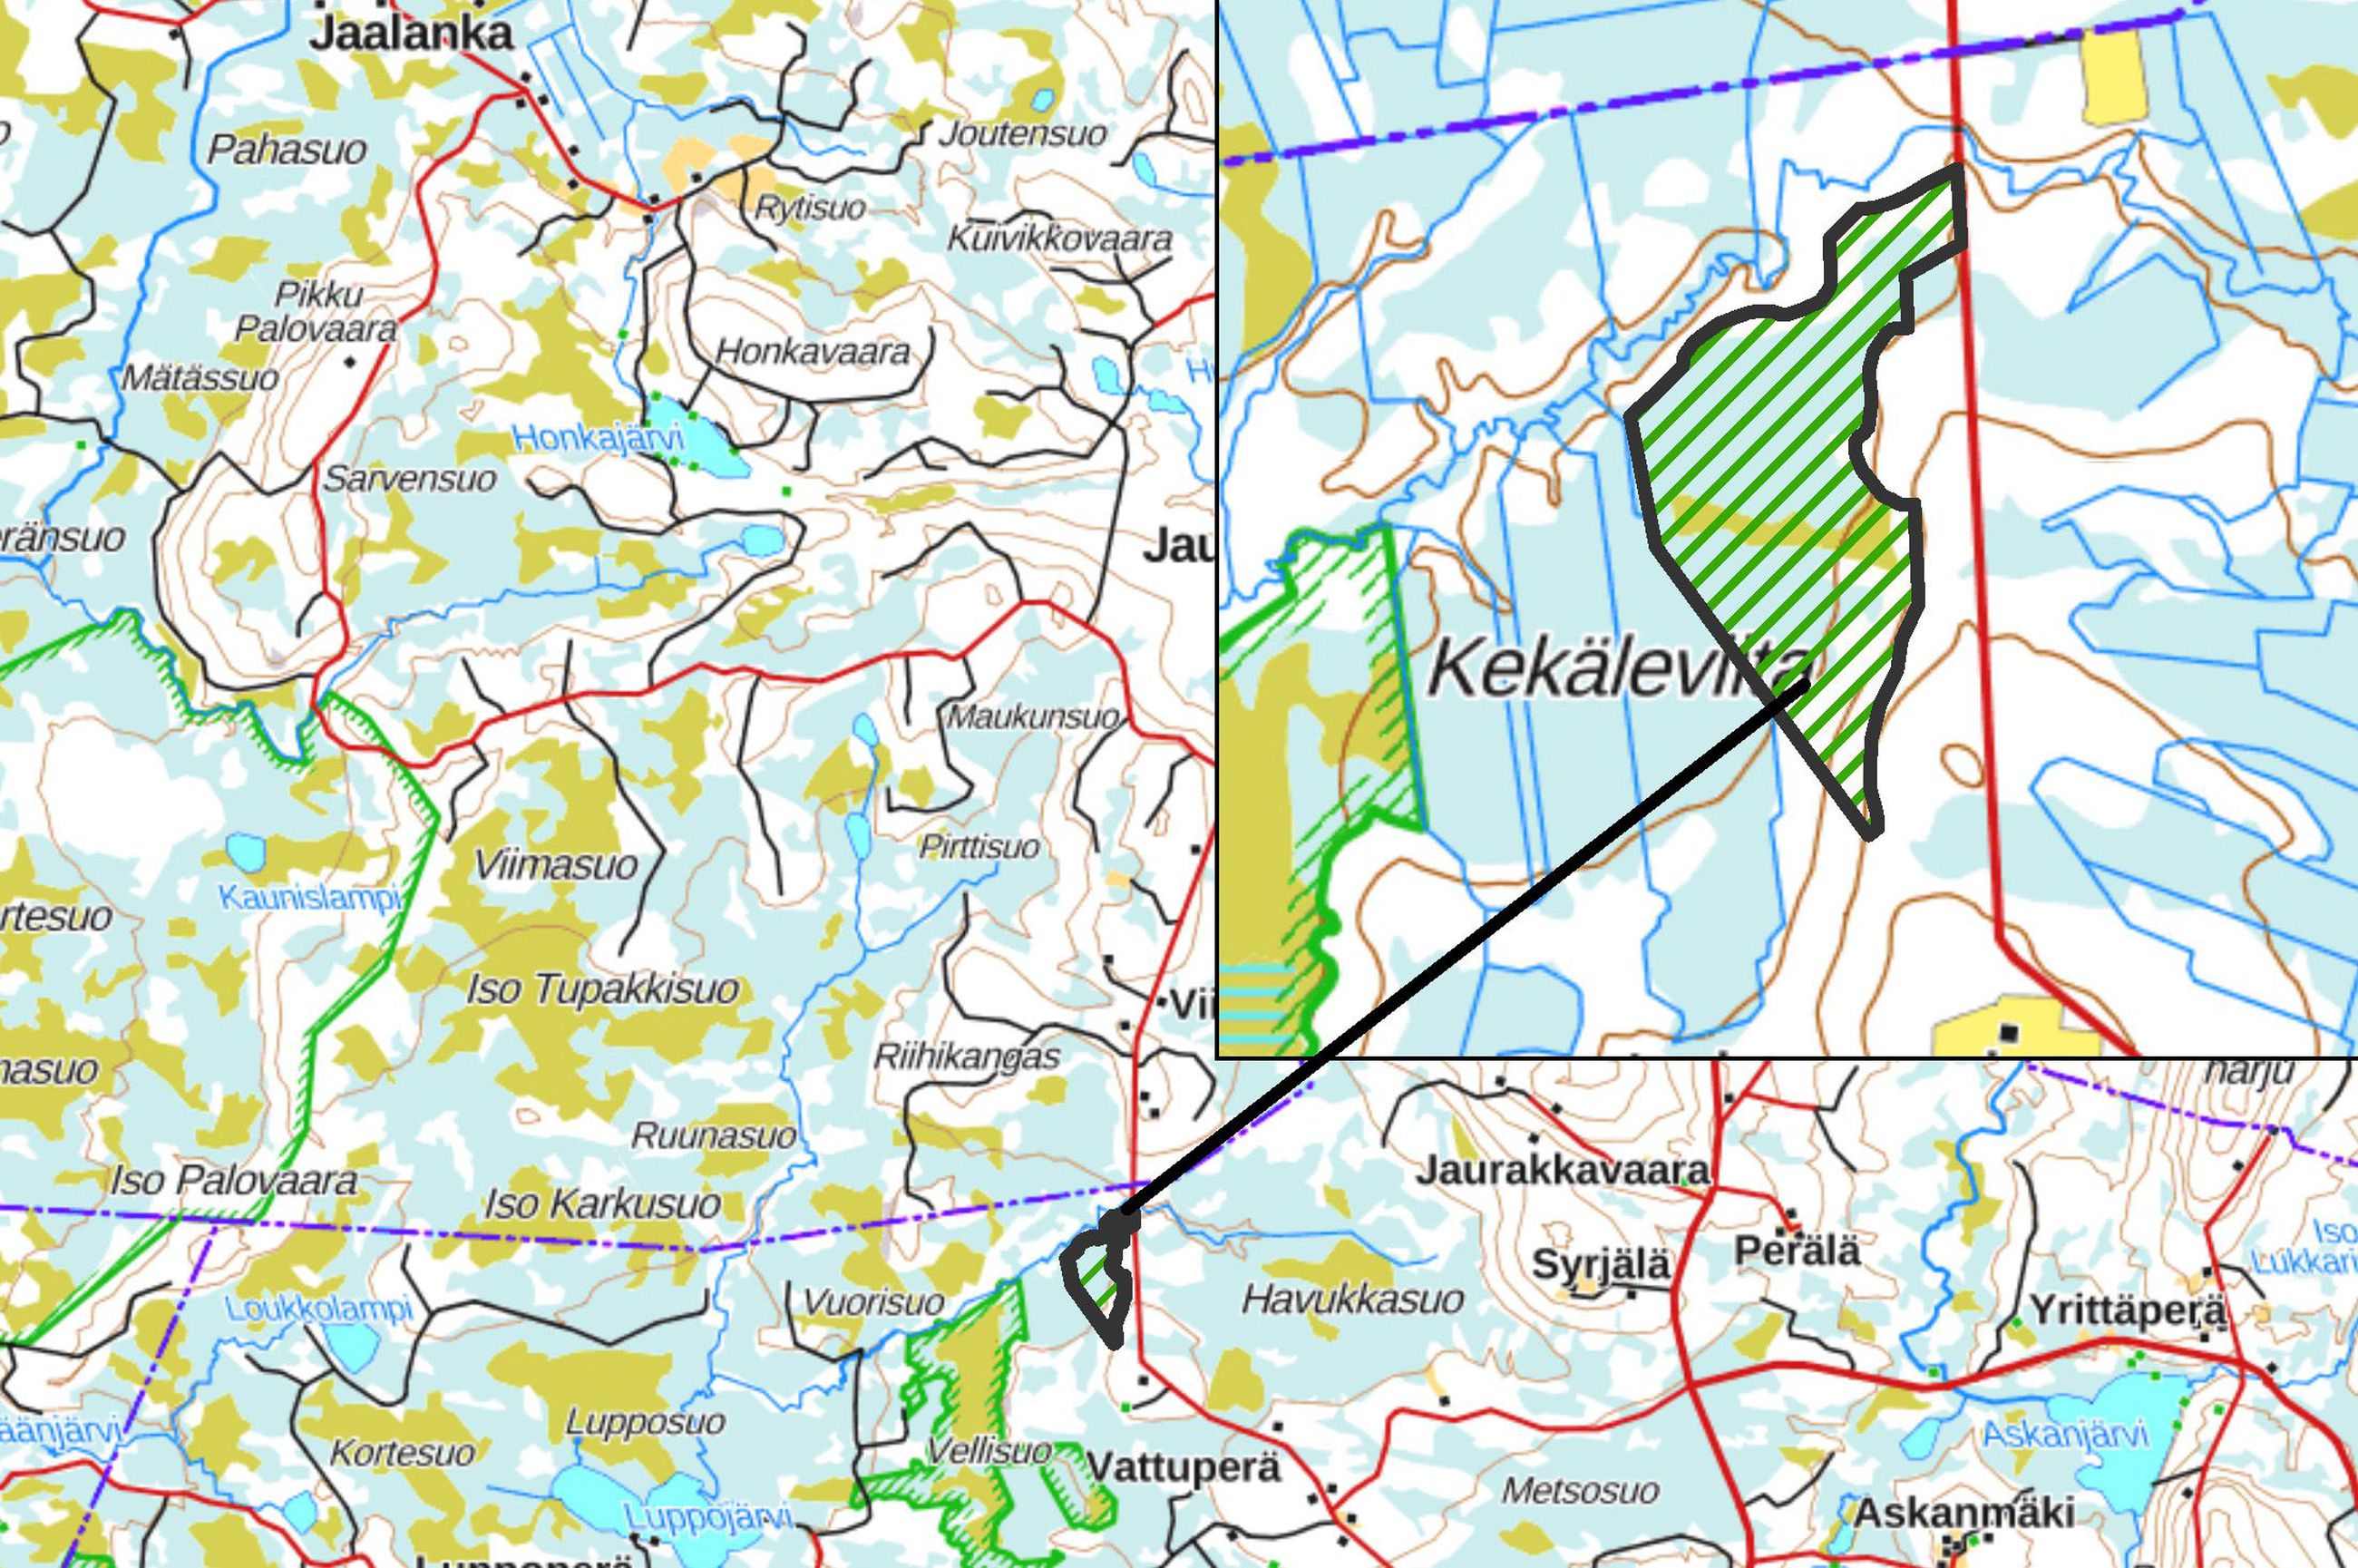 Puolangan Askankylälle perustettiin uusi luonnonsuojelualue – Lehtosaaren  luonnonsuojelualue on noin 57 hehtaarin kokoinen | Kaleva